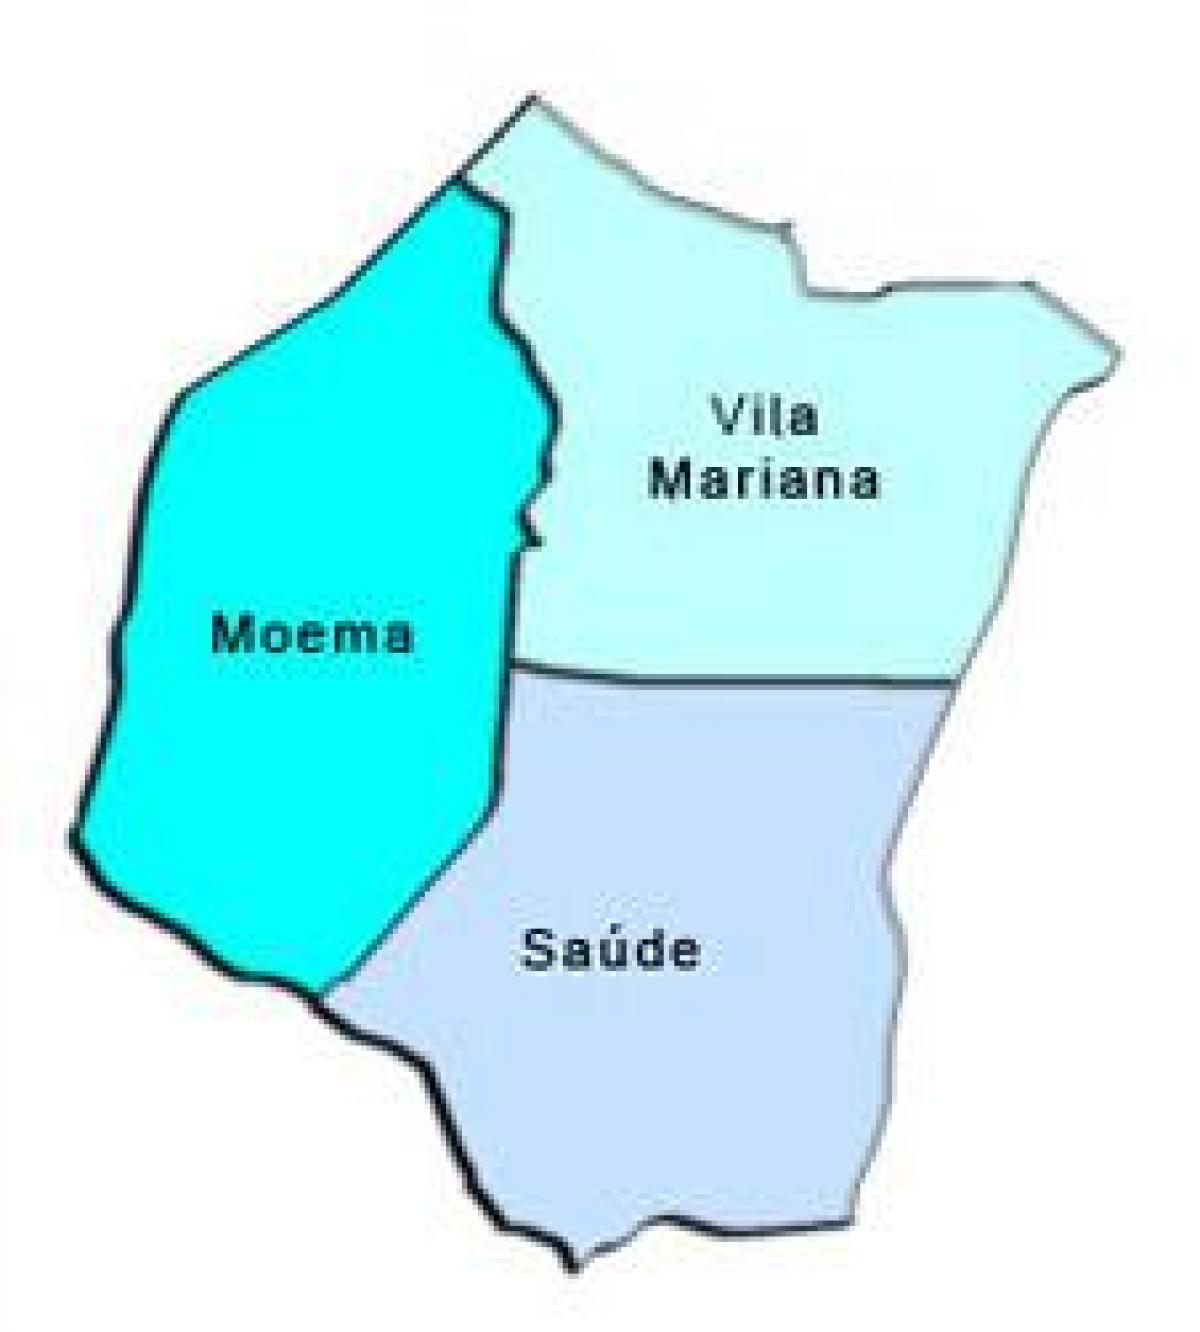 Zemljevid Vila Marianski sub-prefekturi